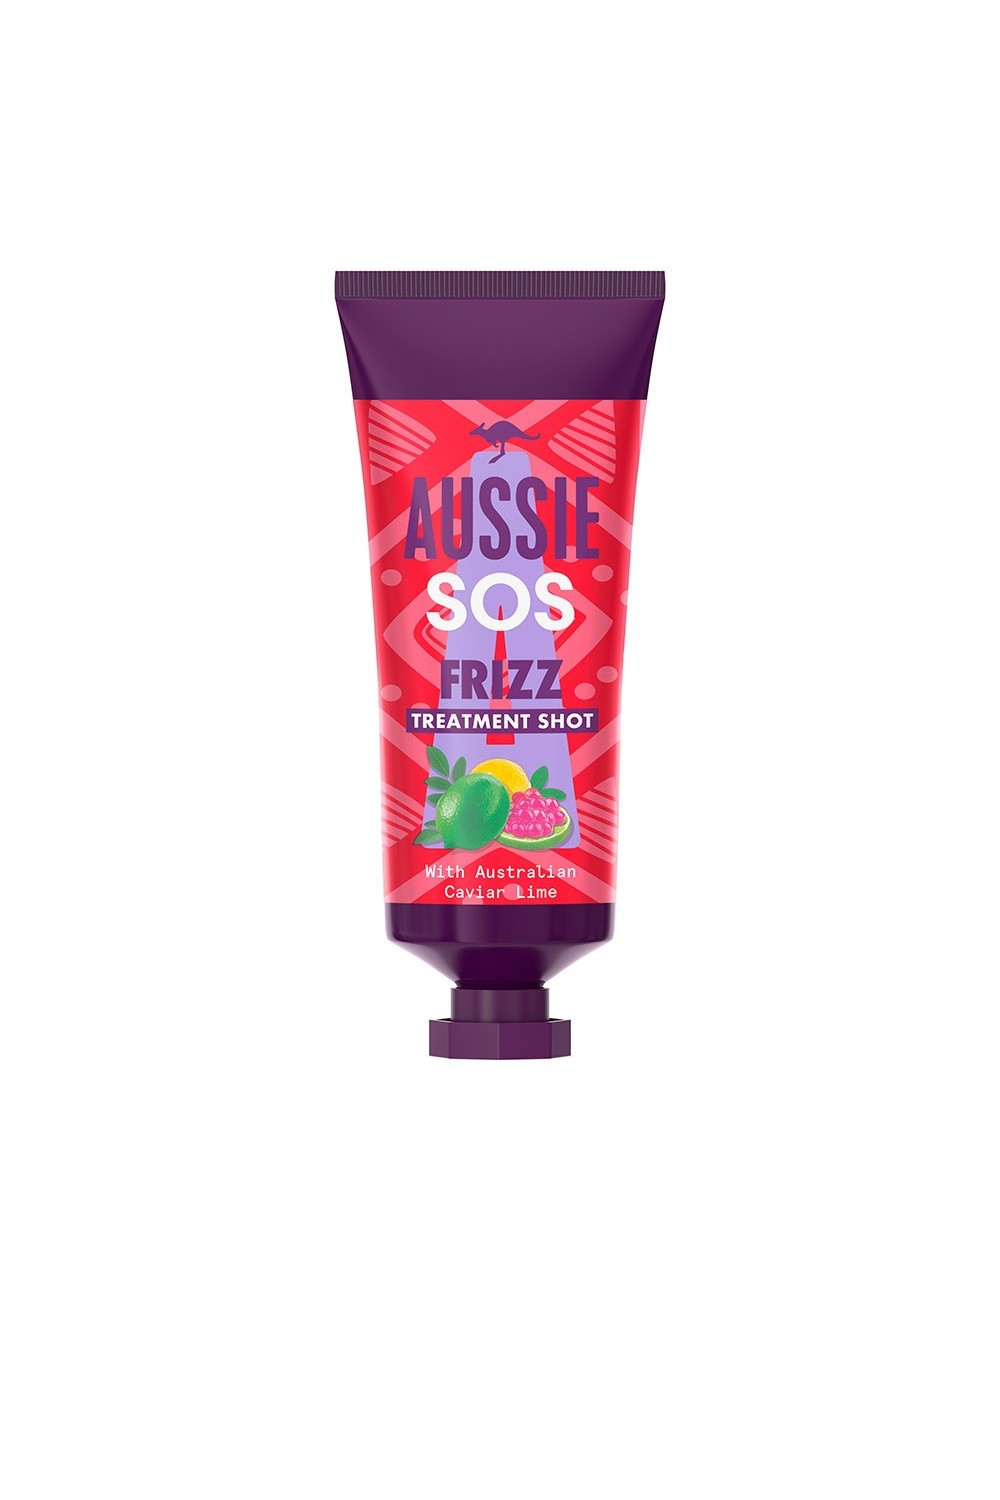 AUSSIE HAIR - Aussie SOS Frizz Super Masque 25ml